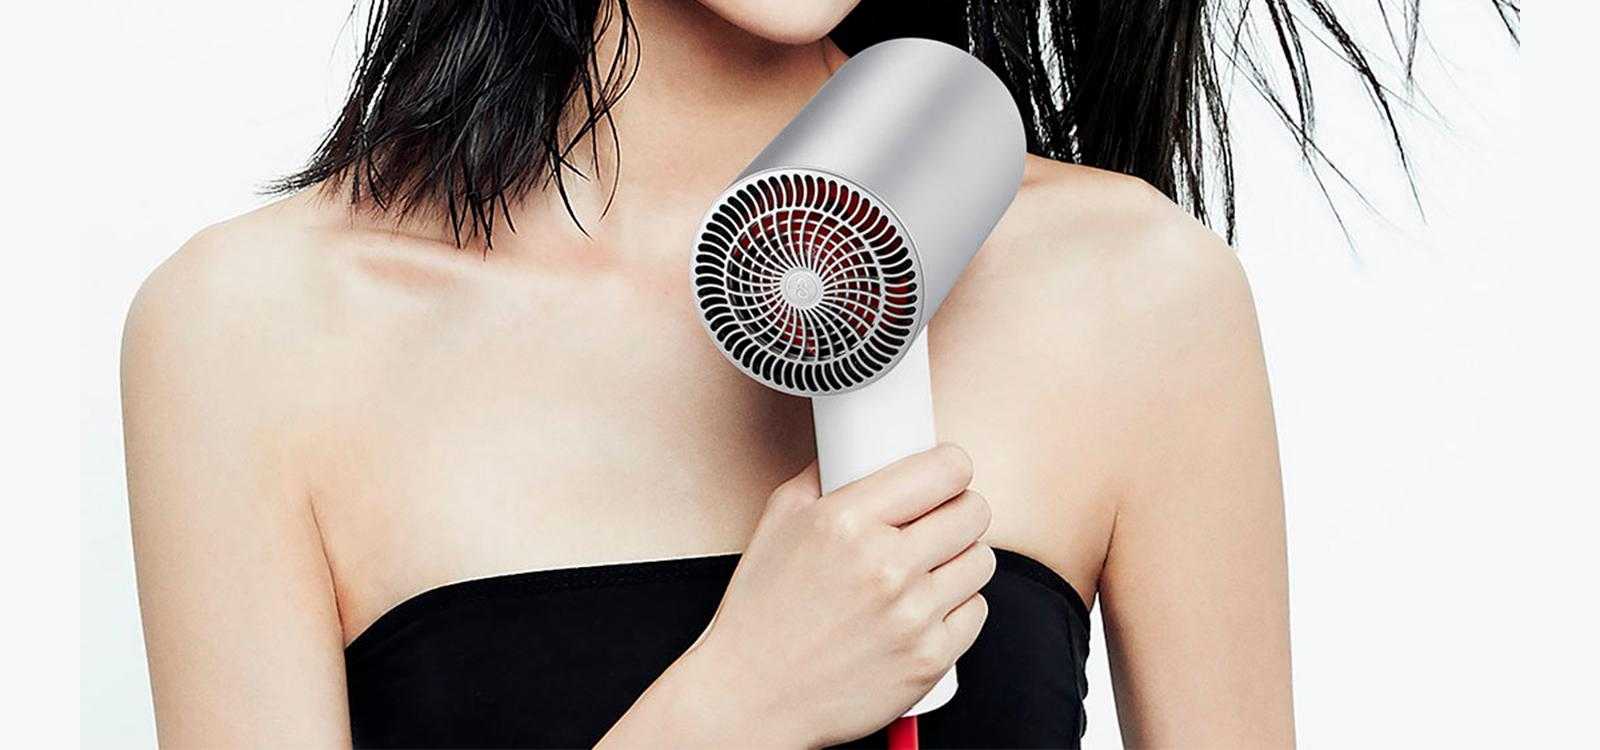 Как быстро высушить волосы без фена: как правильно сушить голову, чтобы они были прямыми с объемом у корней девушке